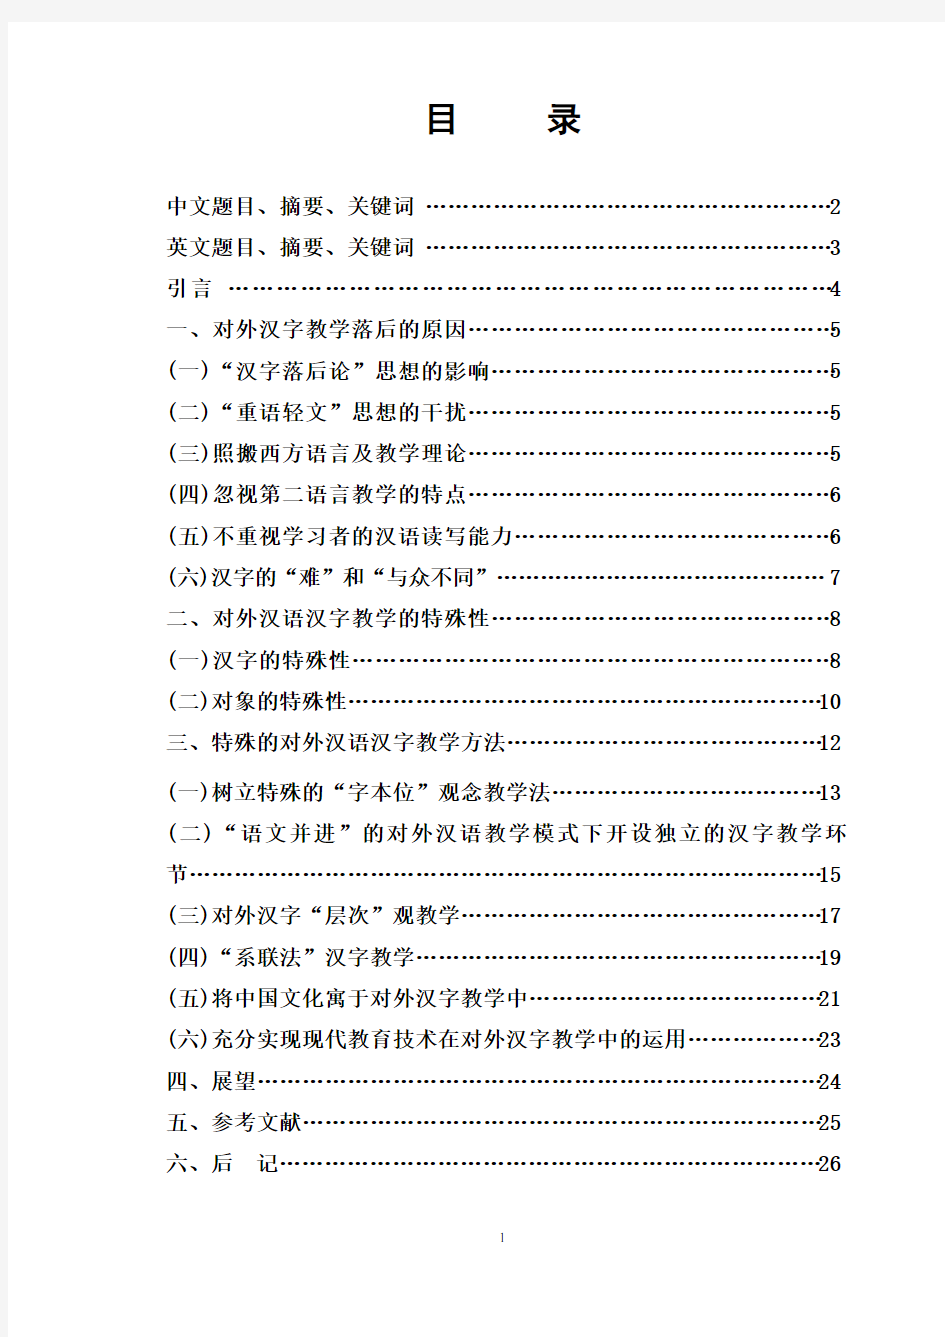 《浅谈对外汉语教学中的汉字教学》 杨梅论文答辩后订稿